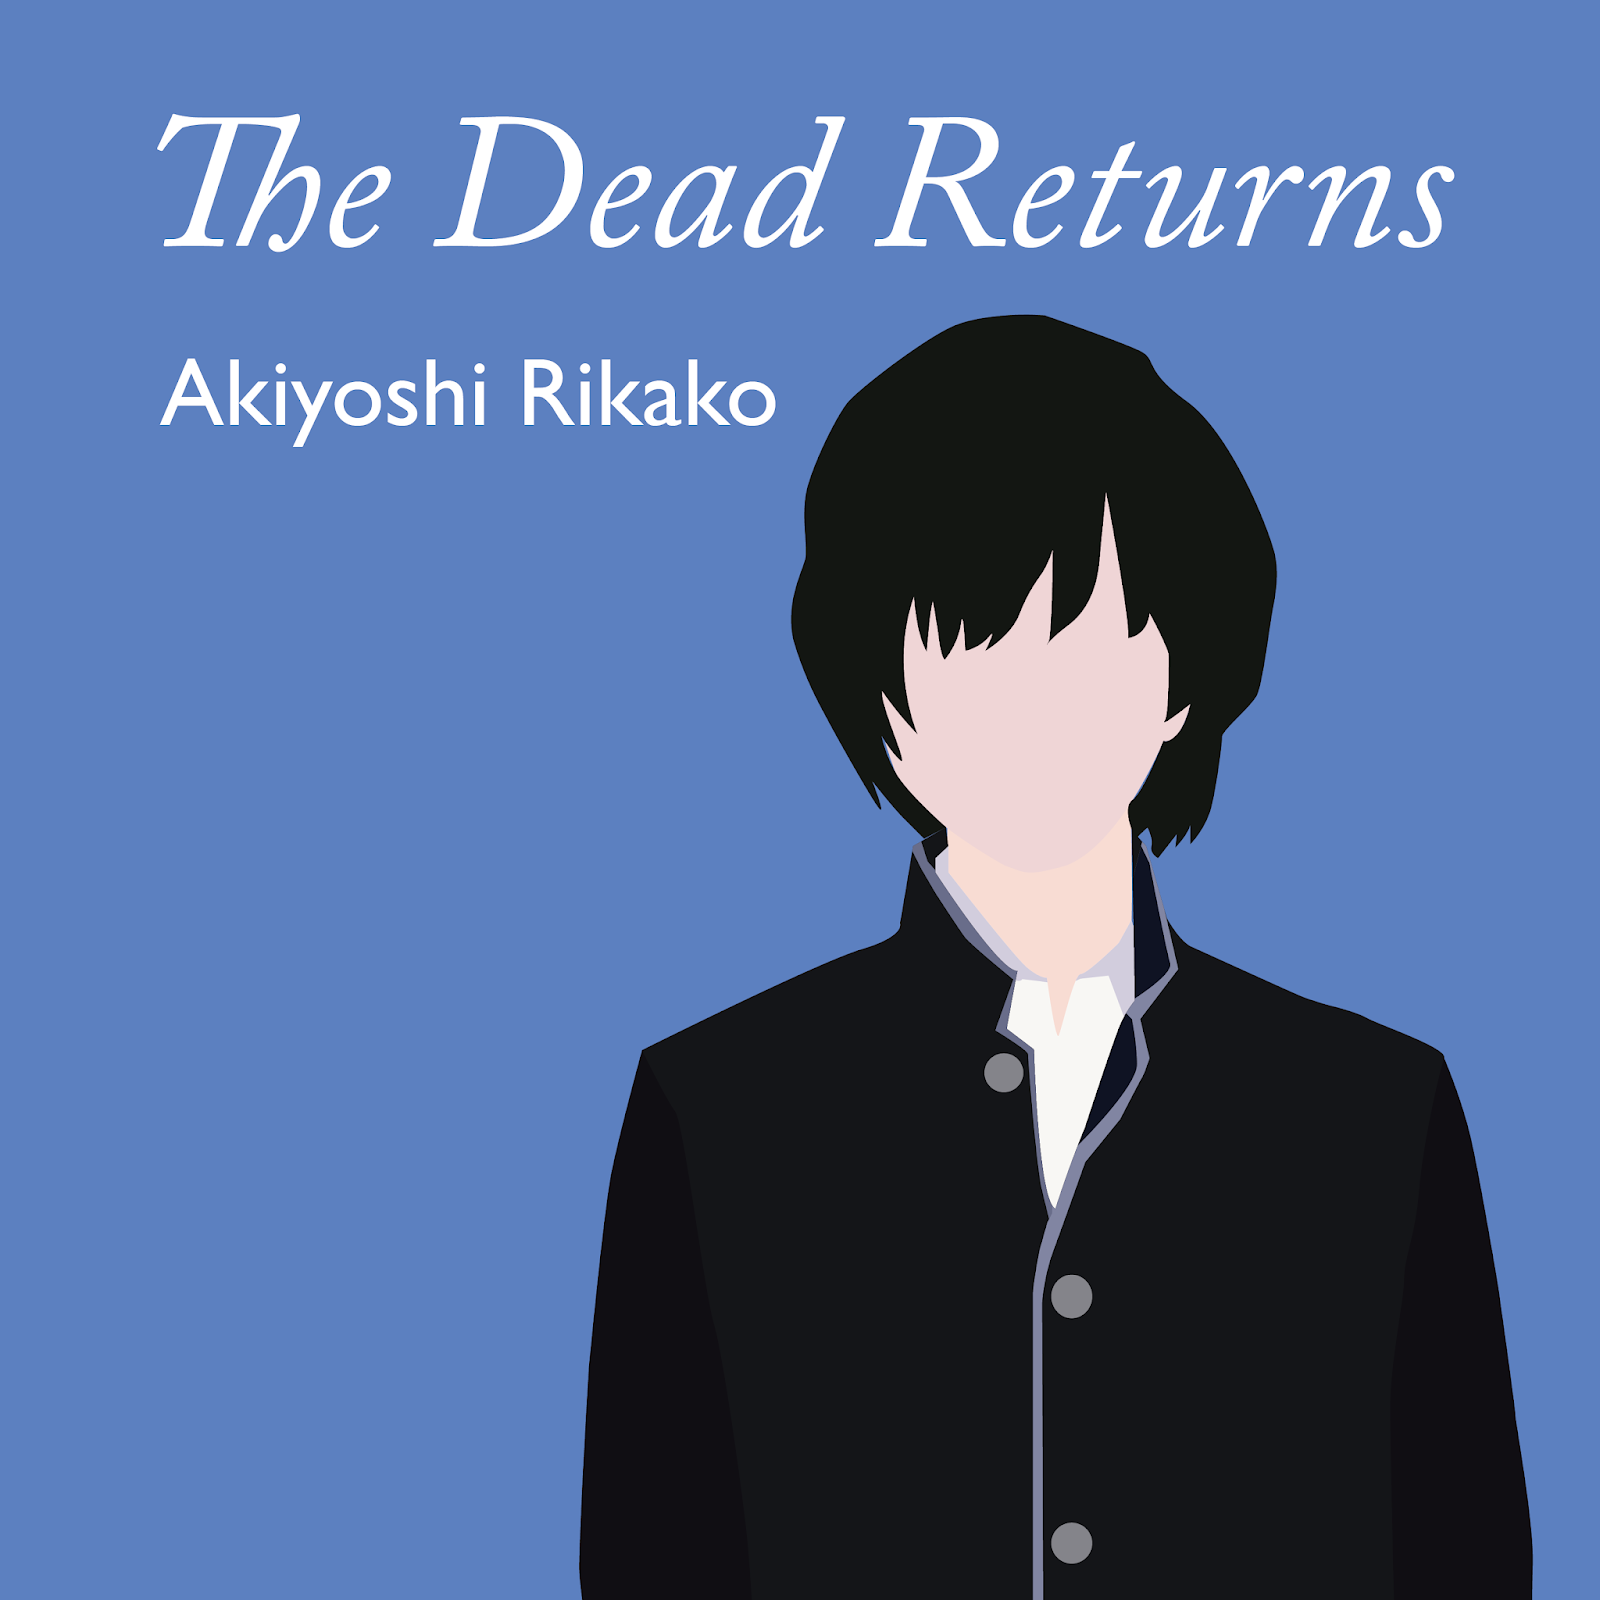 The dead return